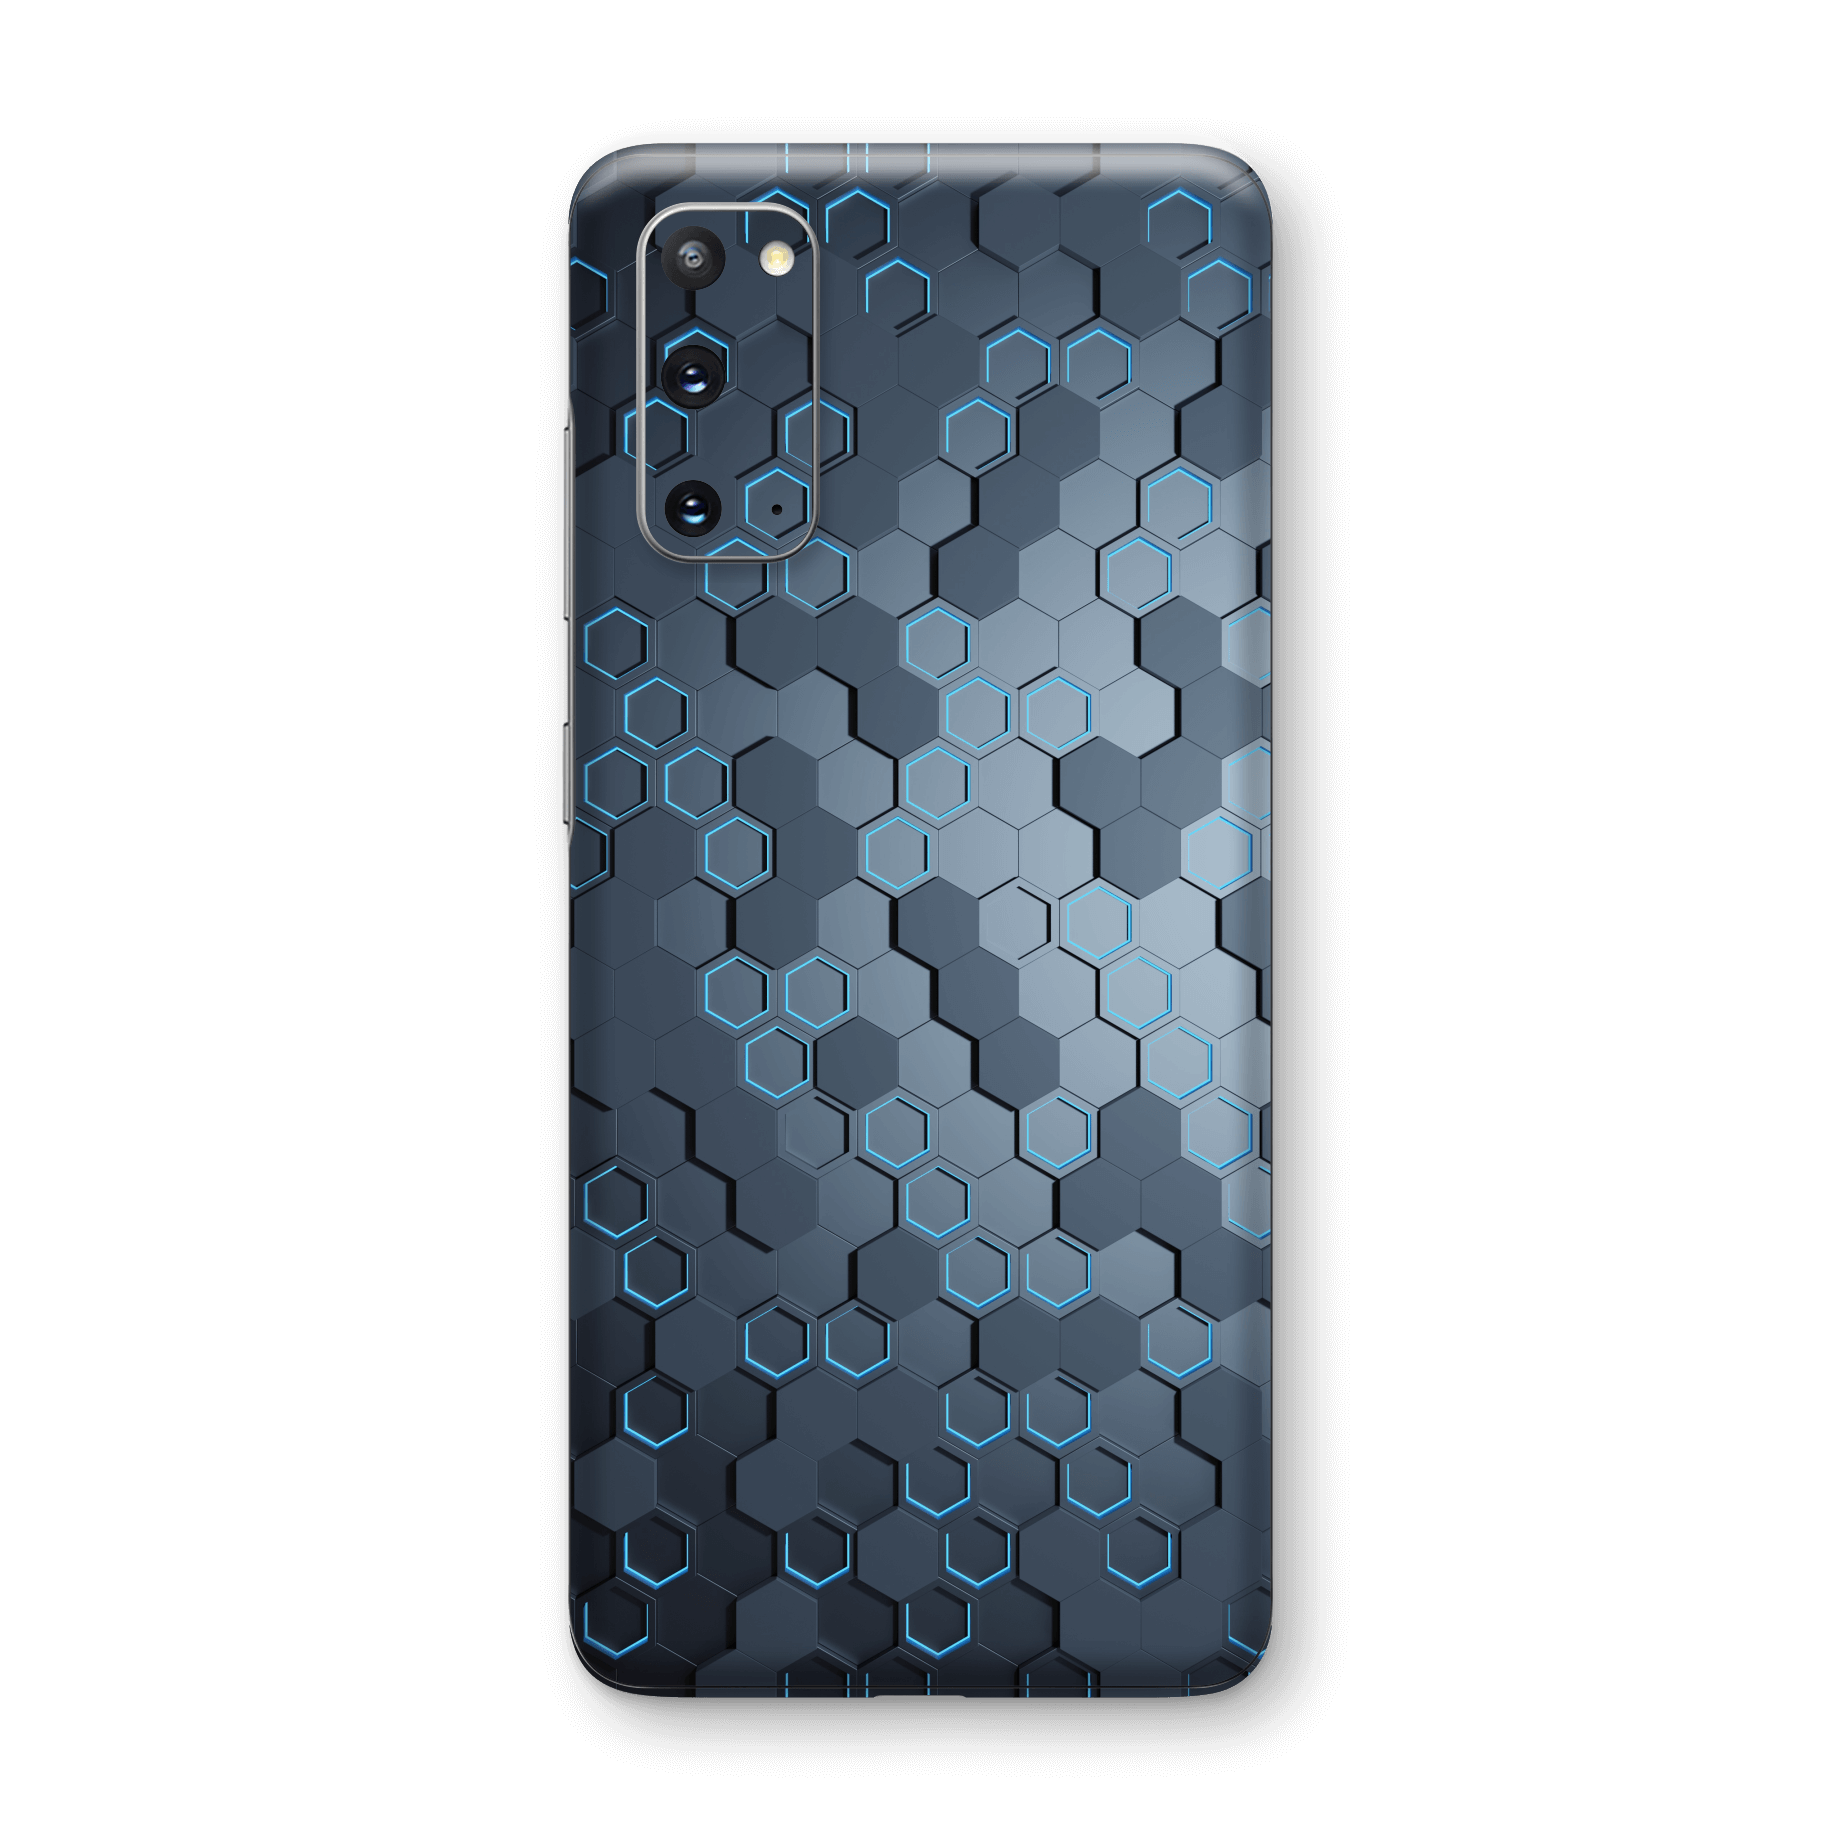 Samsung Galaxy S20 SIGNATURE Blue HEXAGON Skin, Wrap, Decal, Protector, Cover by EasySkinz | EasySkinz.com